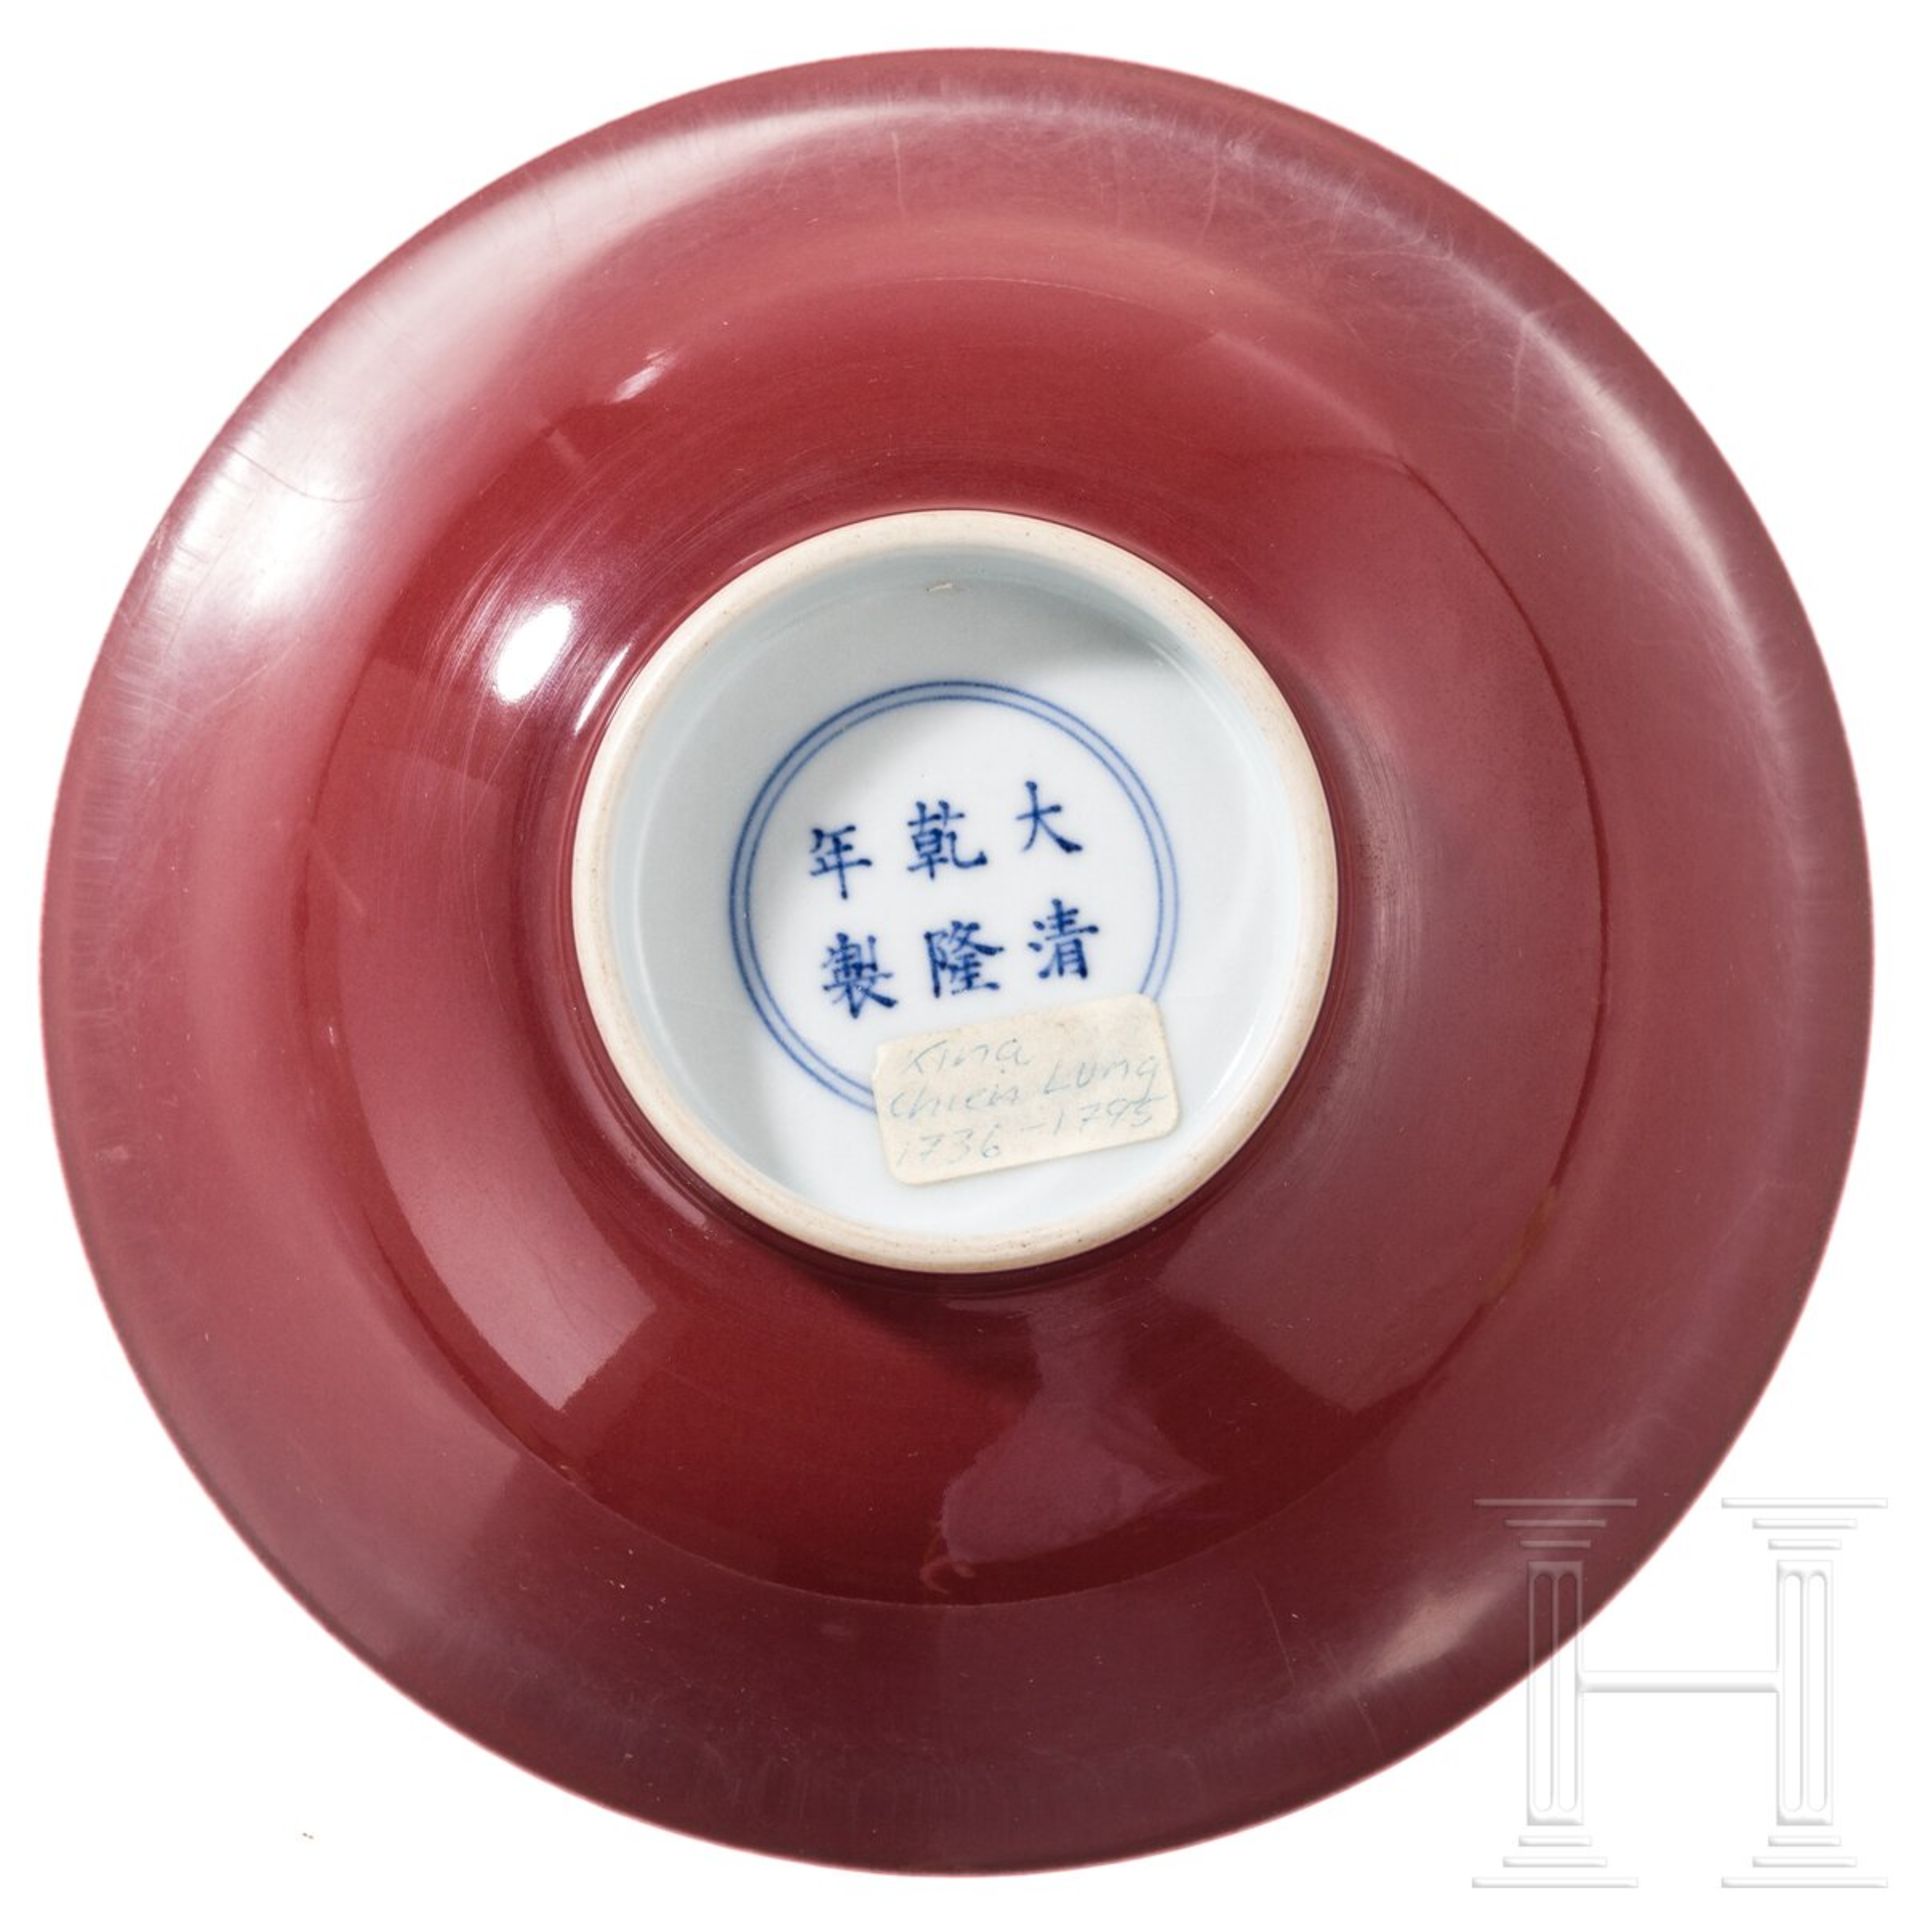 Kupferrote Schale mit Qianlong-Sechs-Zeichen-Marke, China, wahrscheinlich 20. Jhdt.  - Bild 4 aus 5